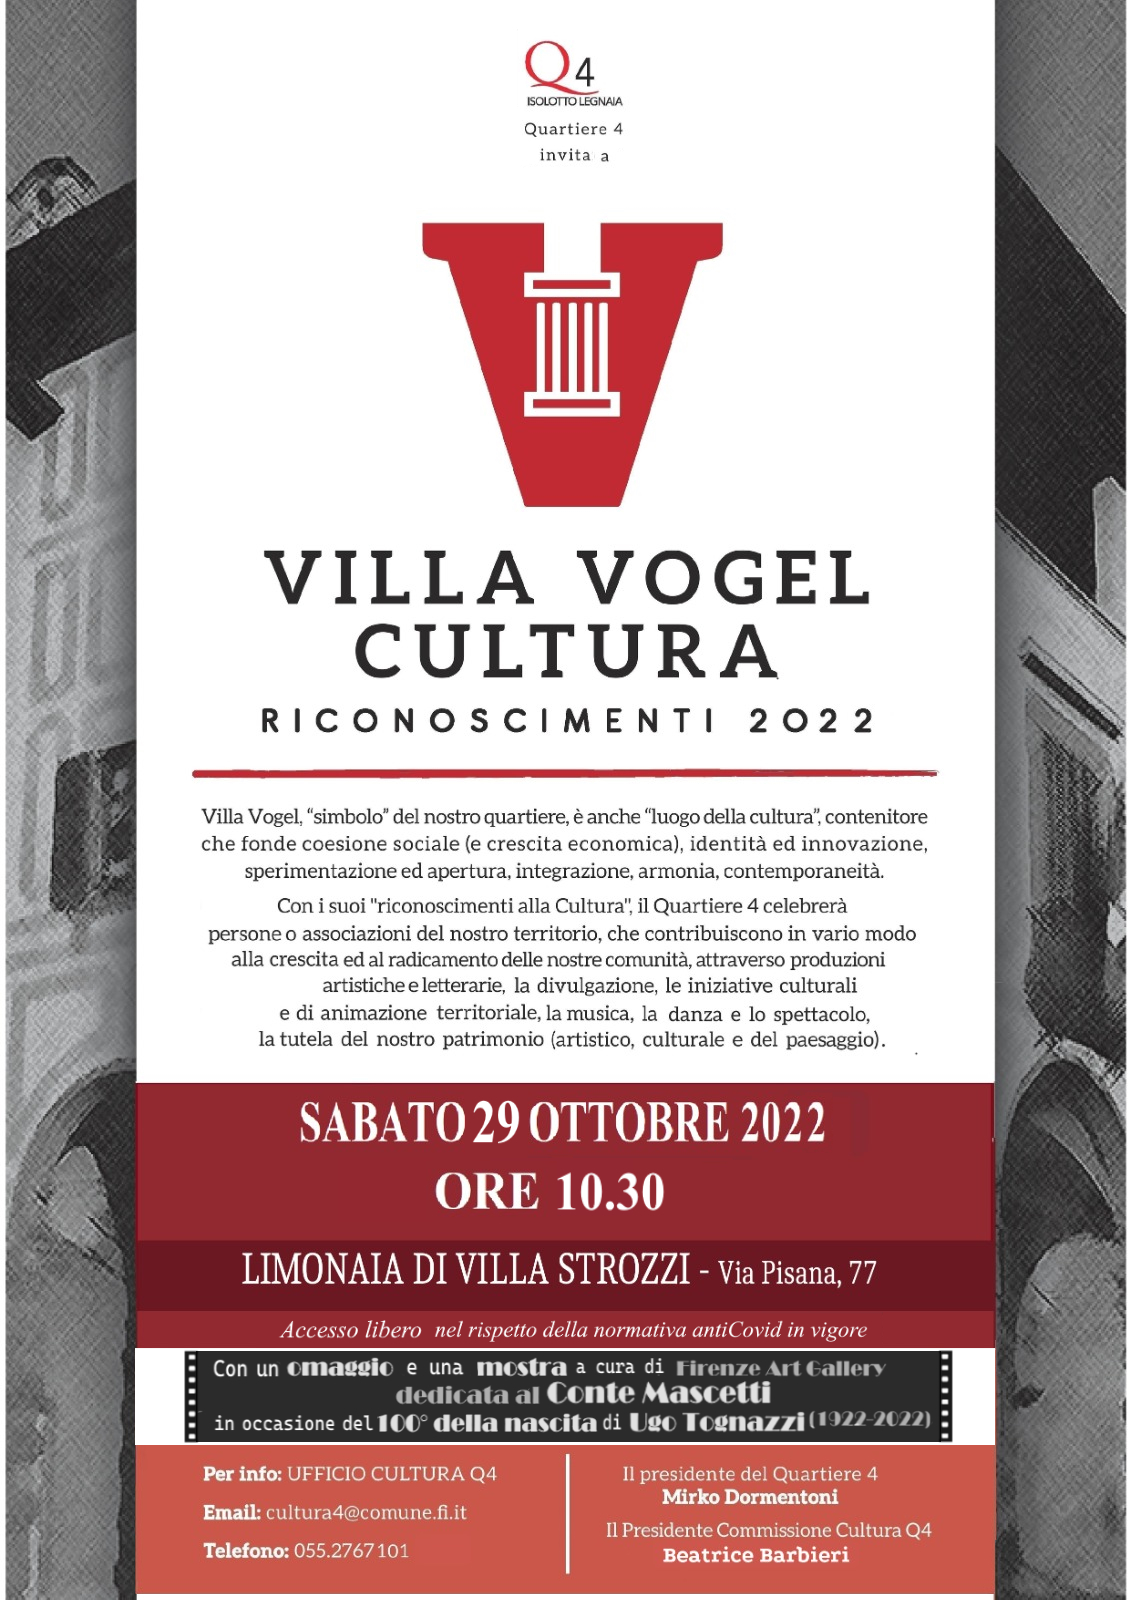 Premio cultura Villa Vogel 2022